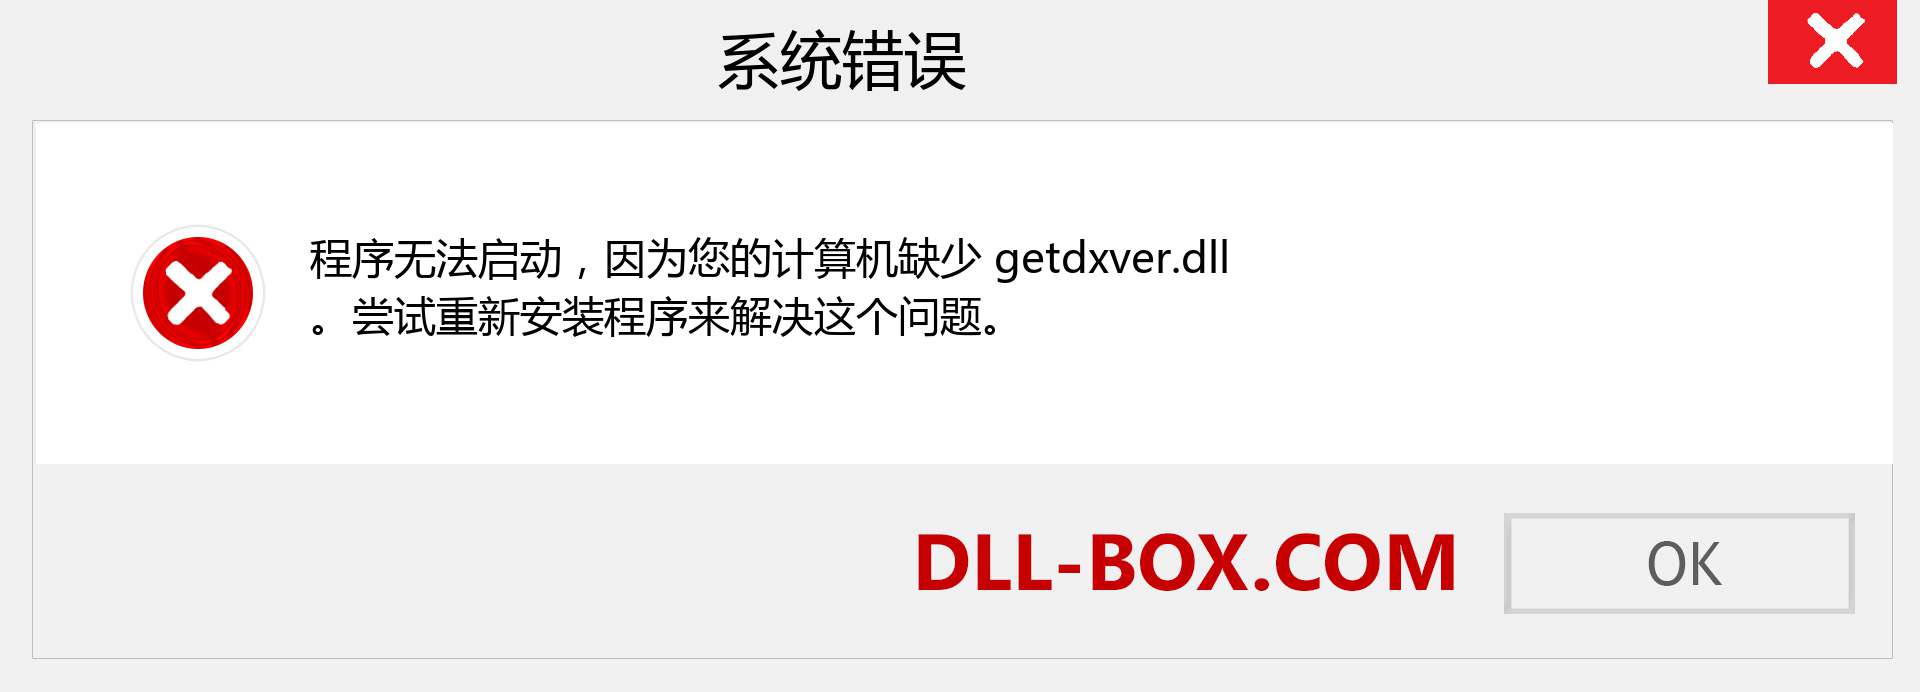 getdxver.dll 文件丢失？。 适用于 Windows 7、8、10 的下载 - 修复 Windows、照片、图像上的 getdxver dll 丢失错误